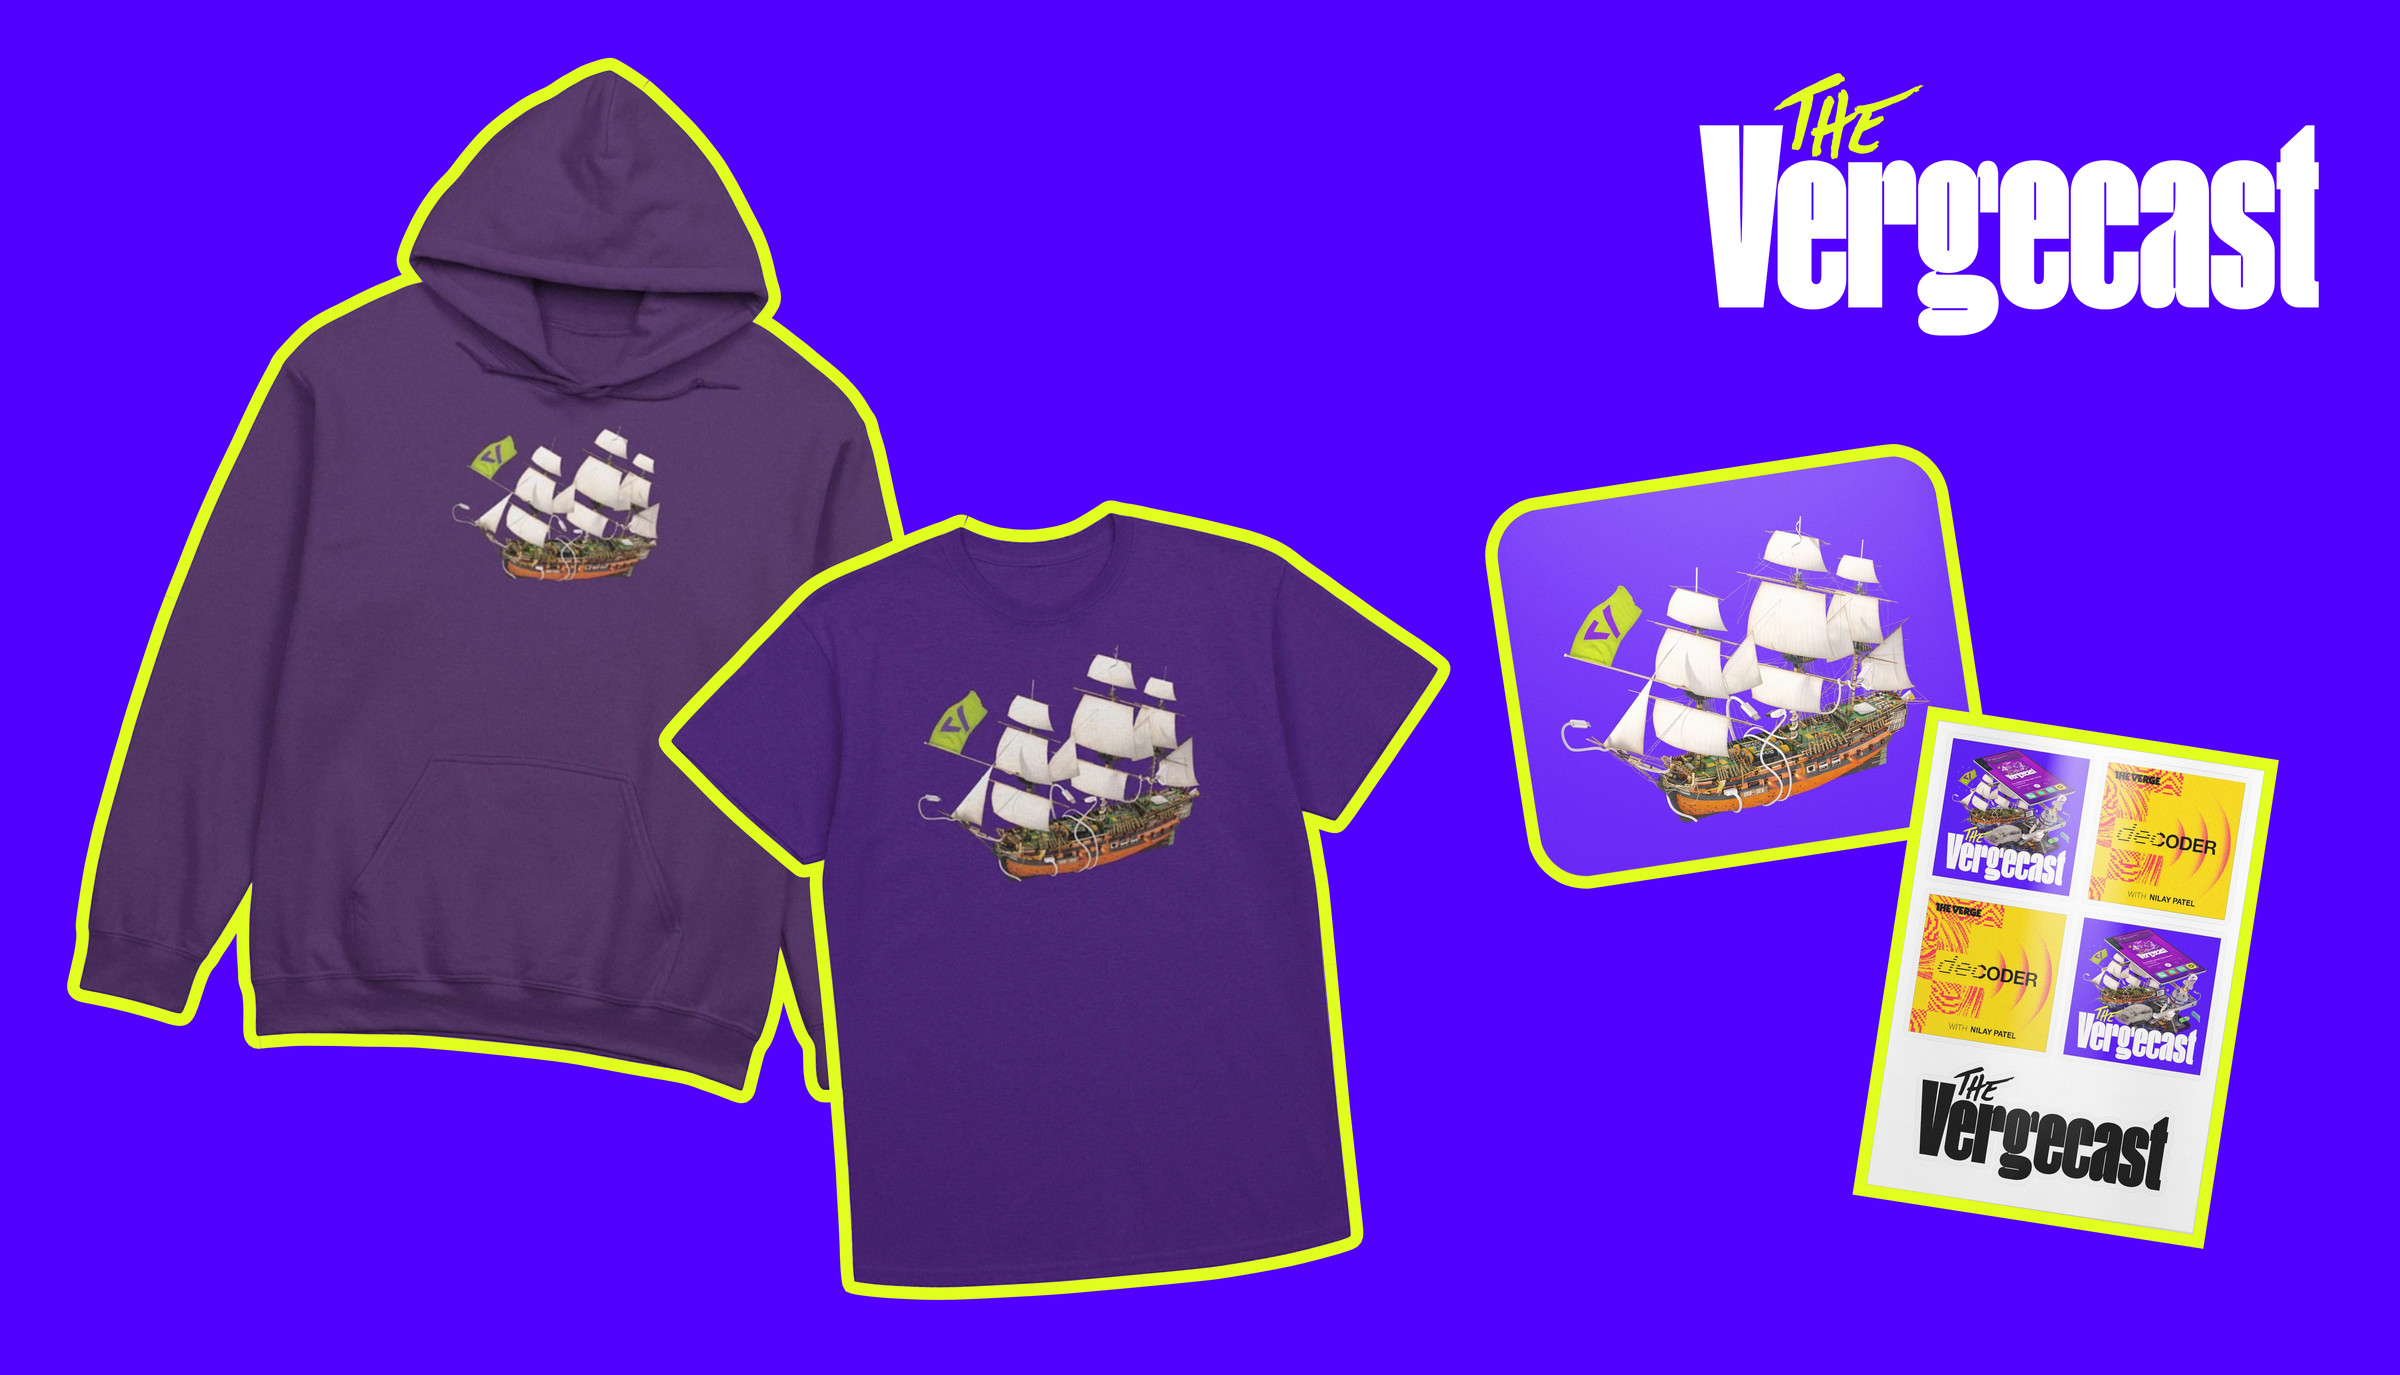 Vergecast hoodie, t-shirt, mousepad, and sticker sheet also featuring Decoder